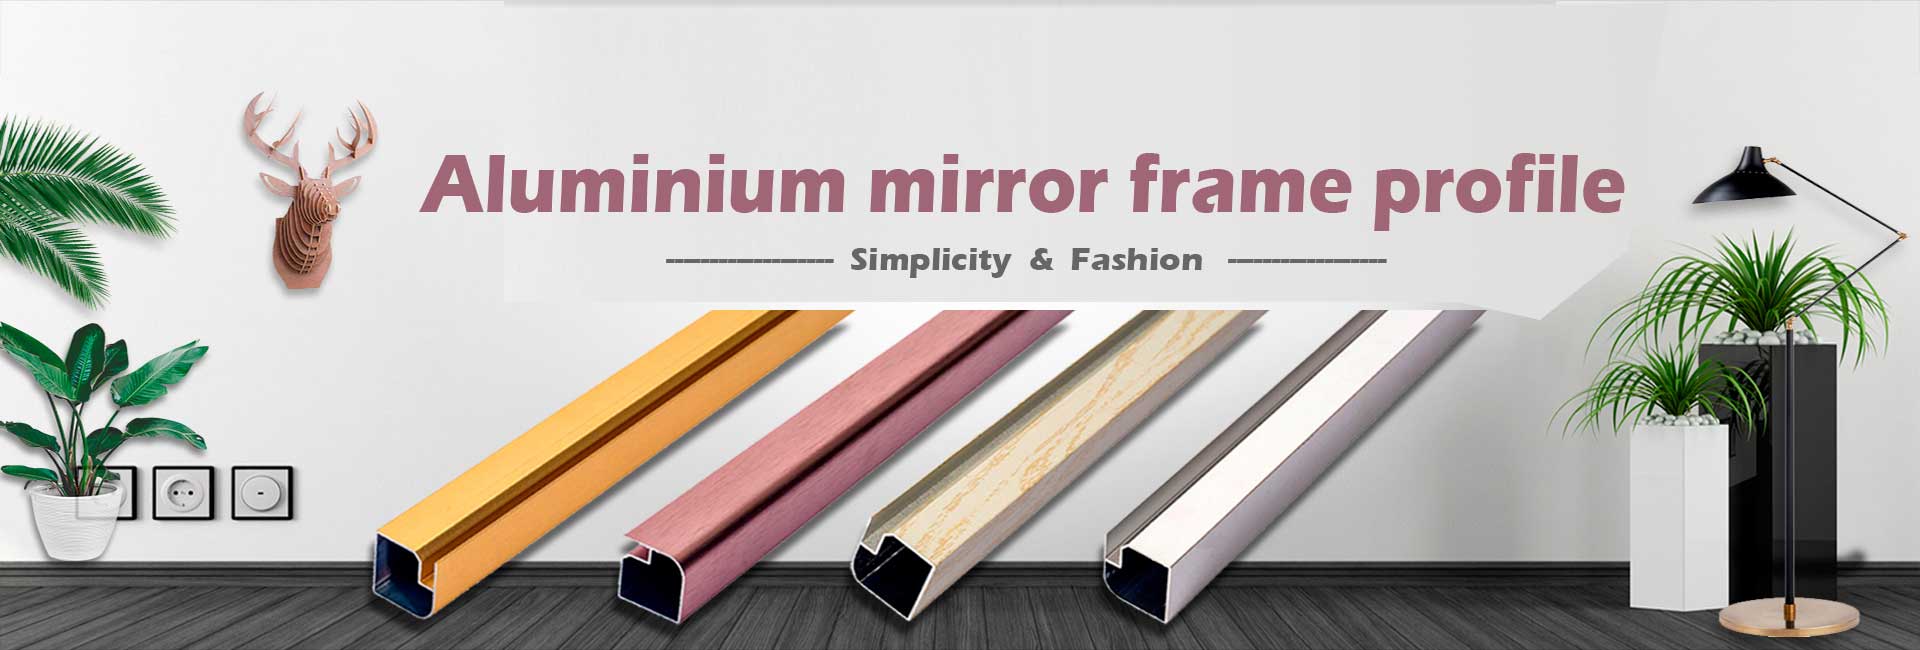 Aluminium mirror frame profile